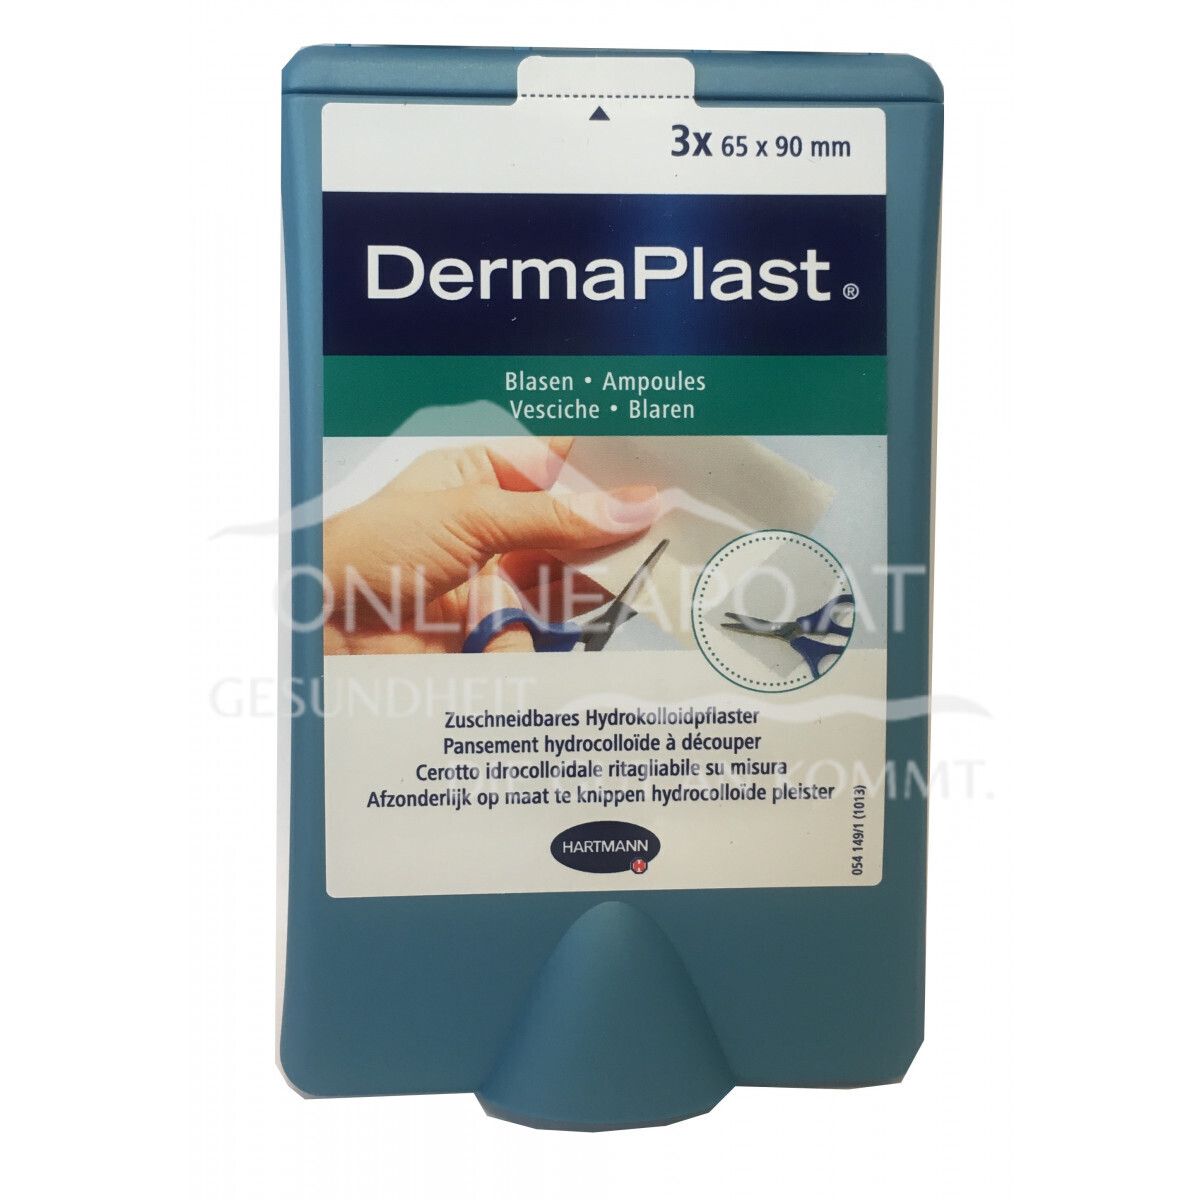 DermaPlast® Blasenpflaster zuschneidbar 65 x 90mm